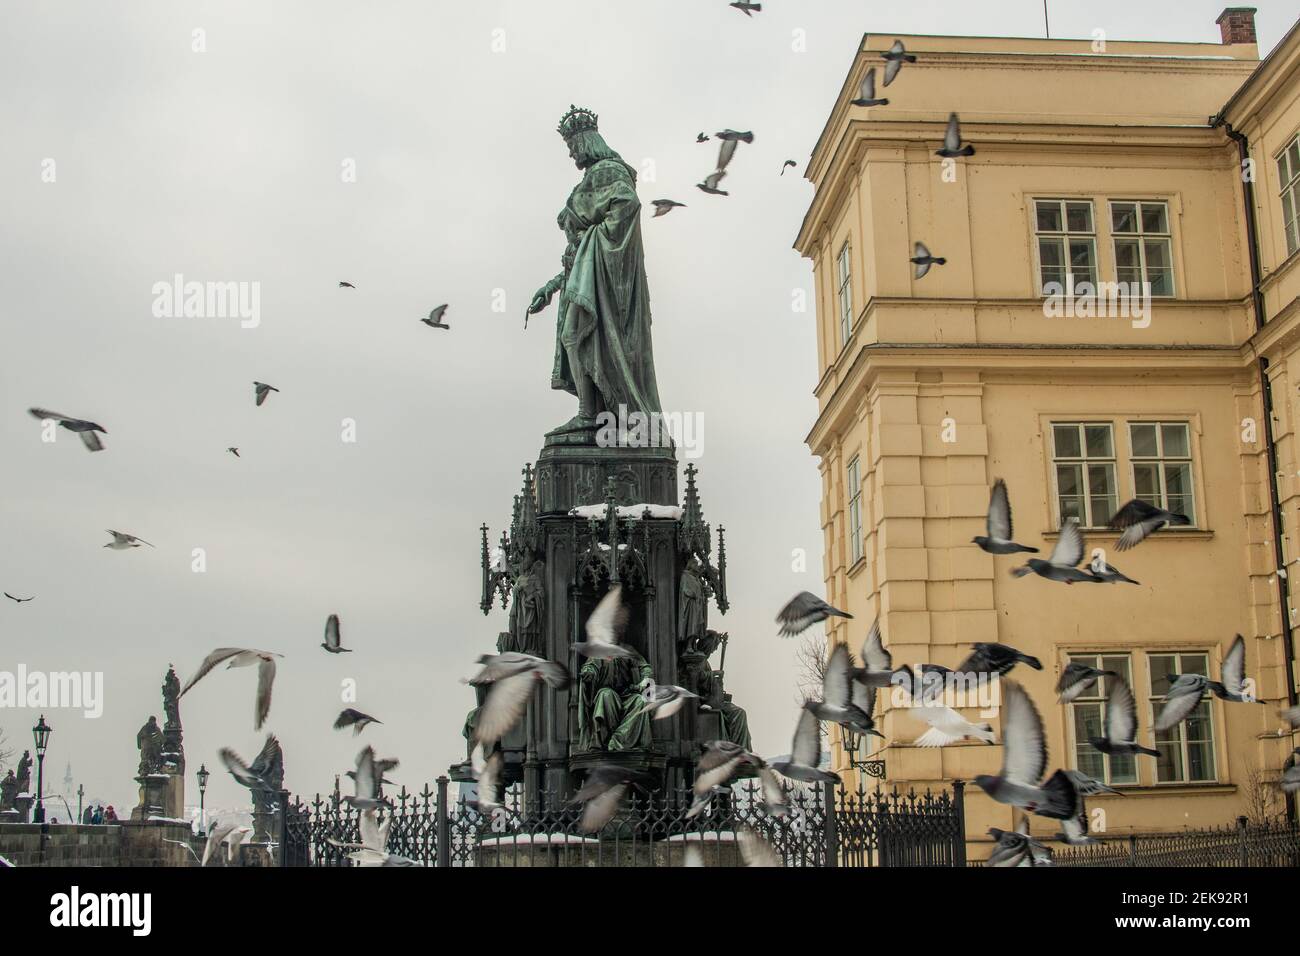 Praga, República Checa. 02-23-2021. Estatua del rey Carlos IV en la Plaza de la Cruz llena de palomas voladoras, cerca del puente de Carlos en Praga. Bronce neogótico Foto de stock